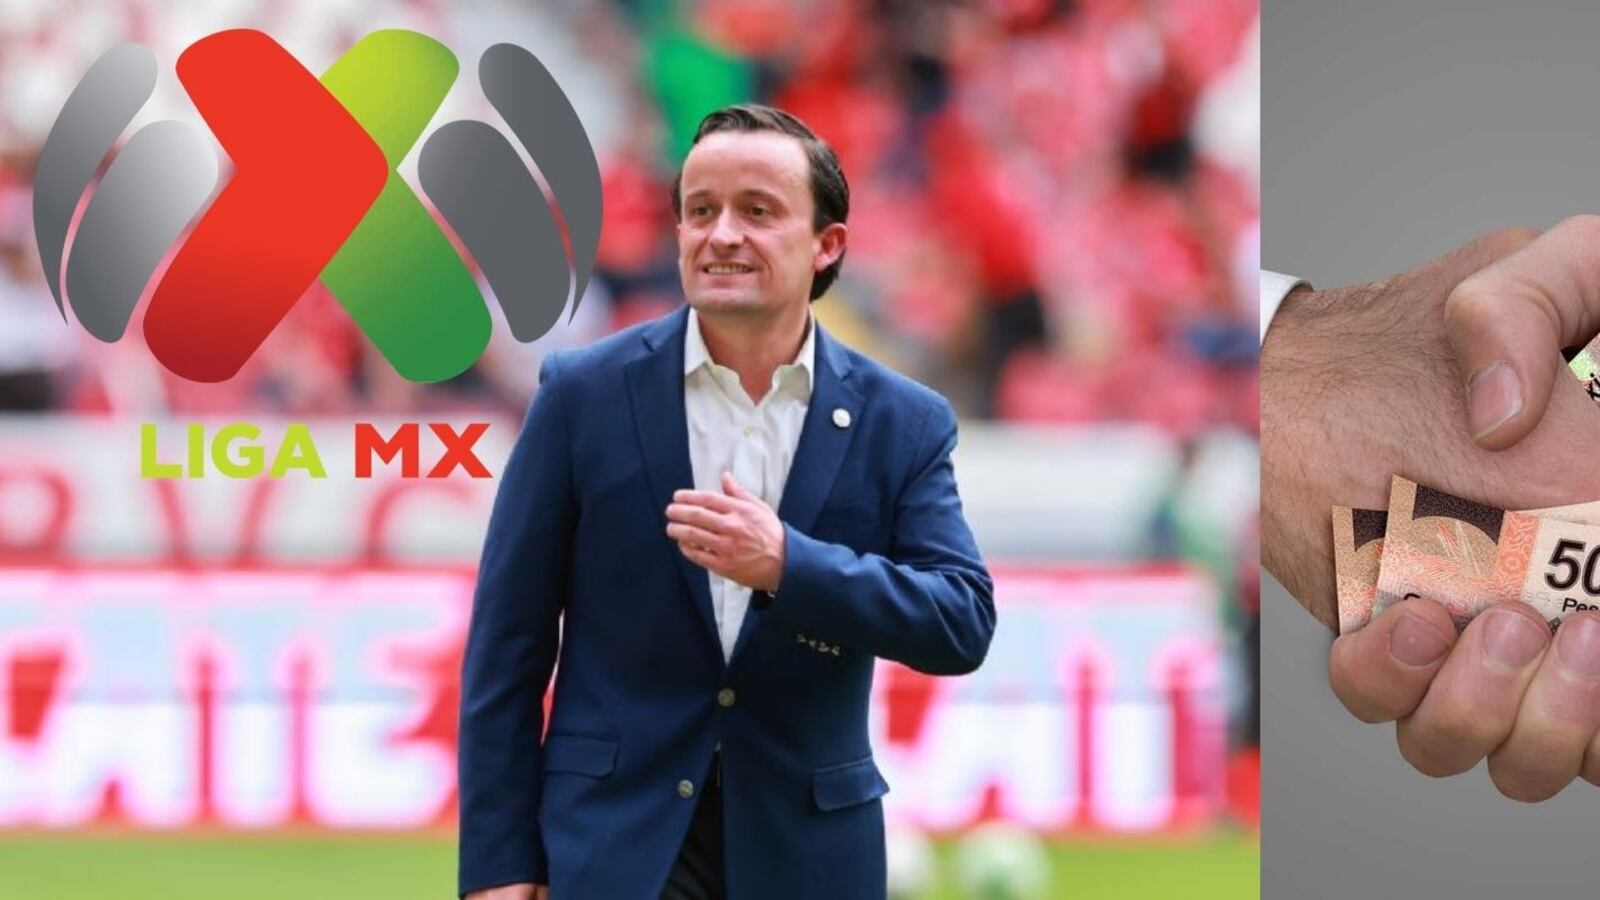 Destapan cómo Mikel Arriola prefiere el negocio a que la Liga MX crezca